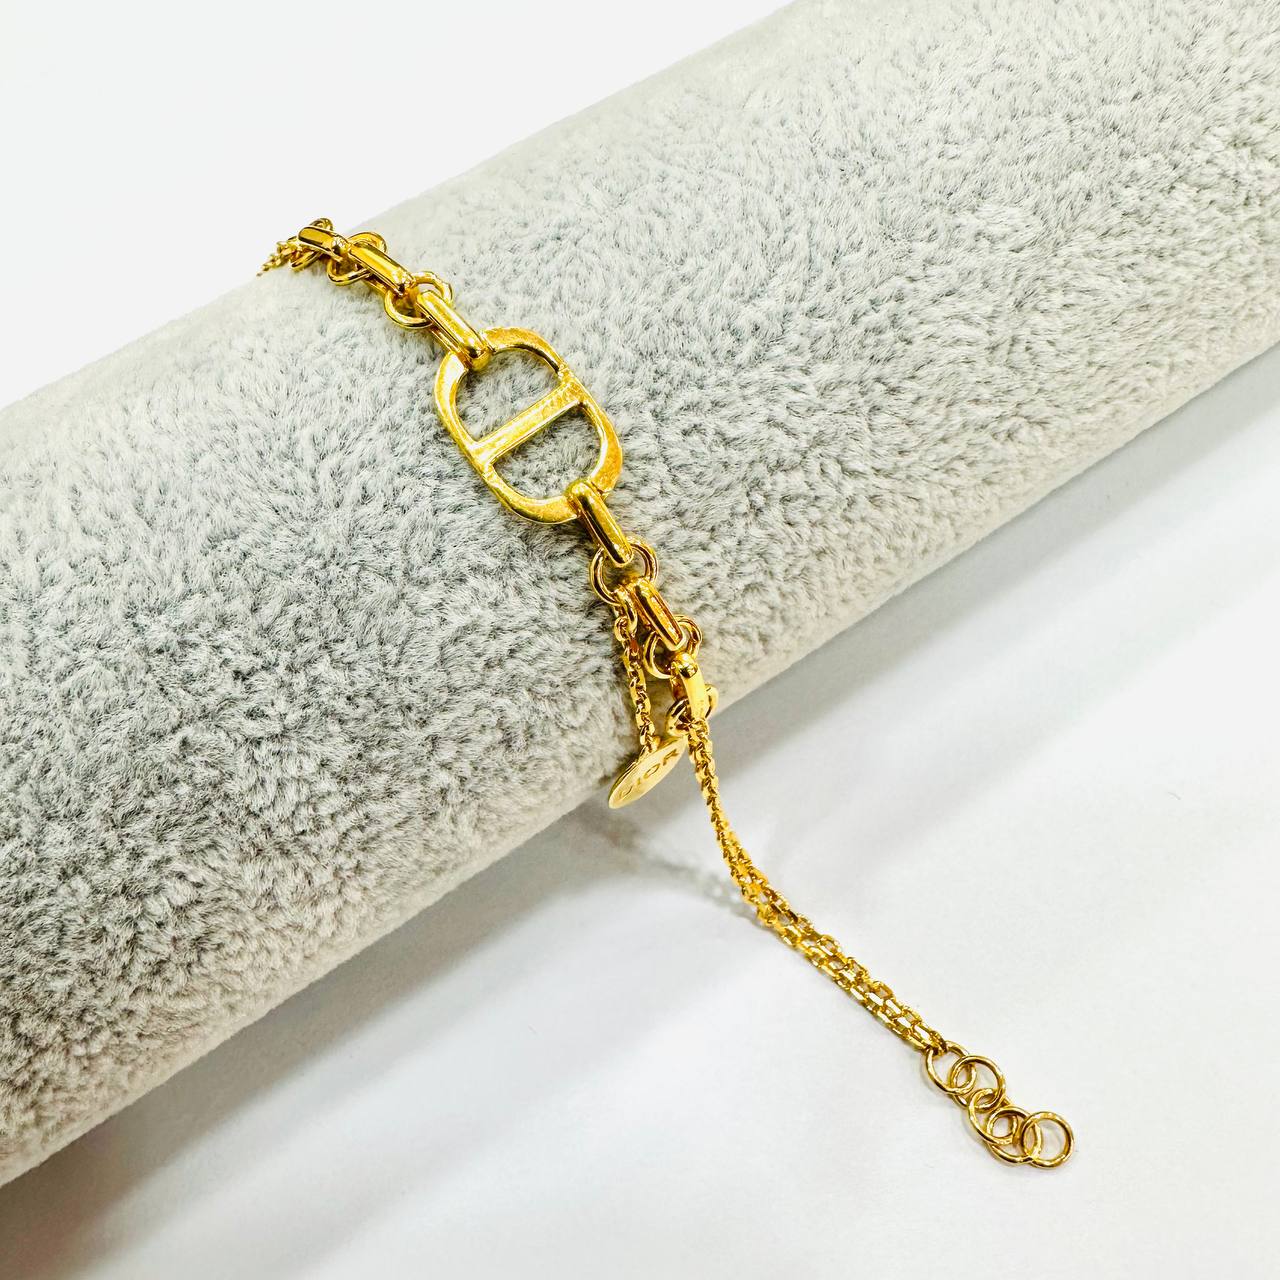 22k / 916 Gold D design bracelet V2-916 gold-Best Gold Shop